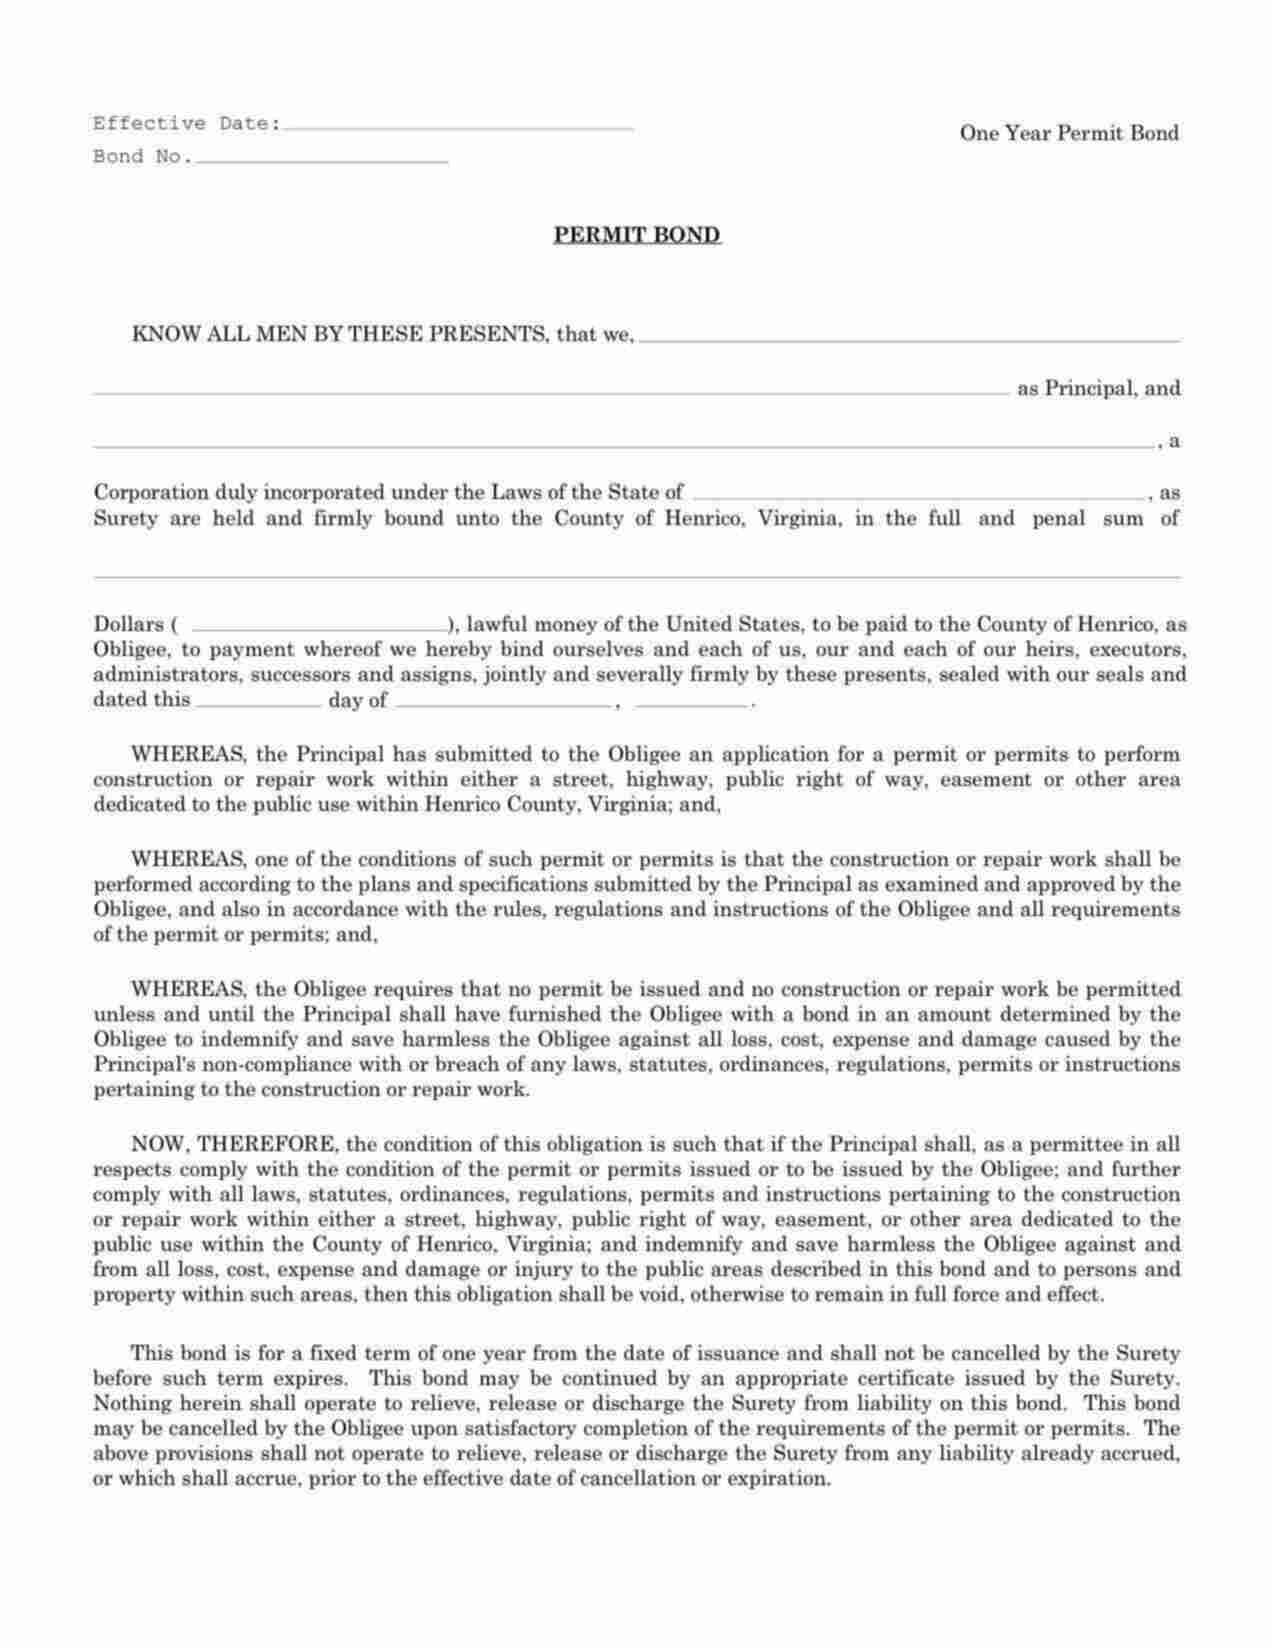 Virginia Permit (One Year) Bond Form